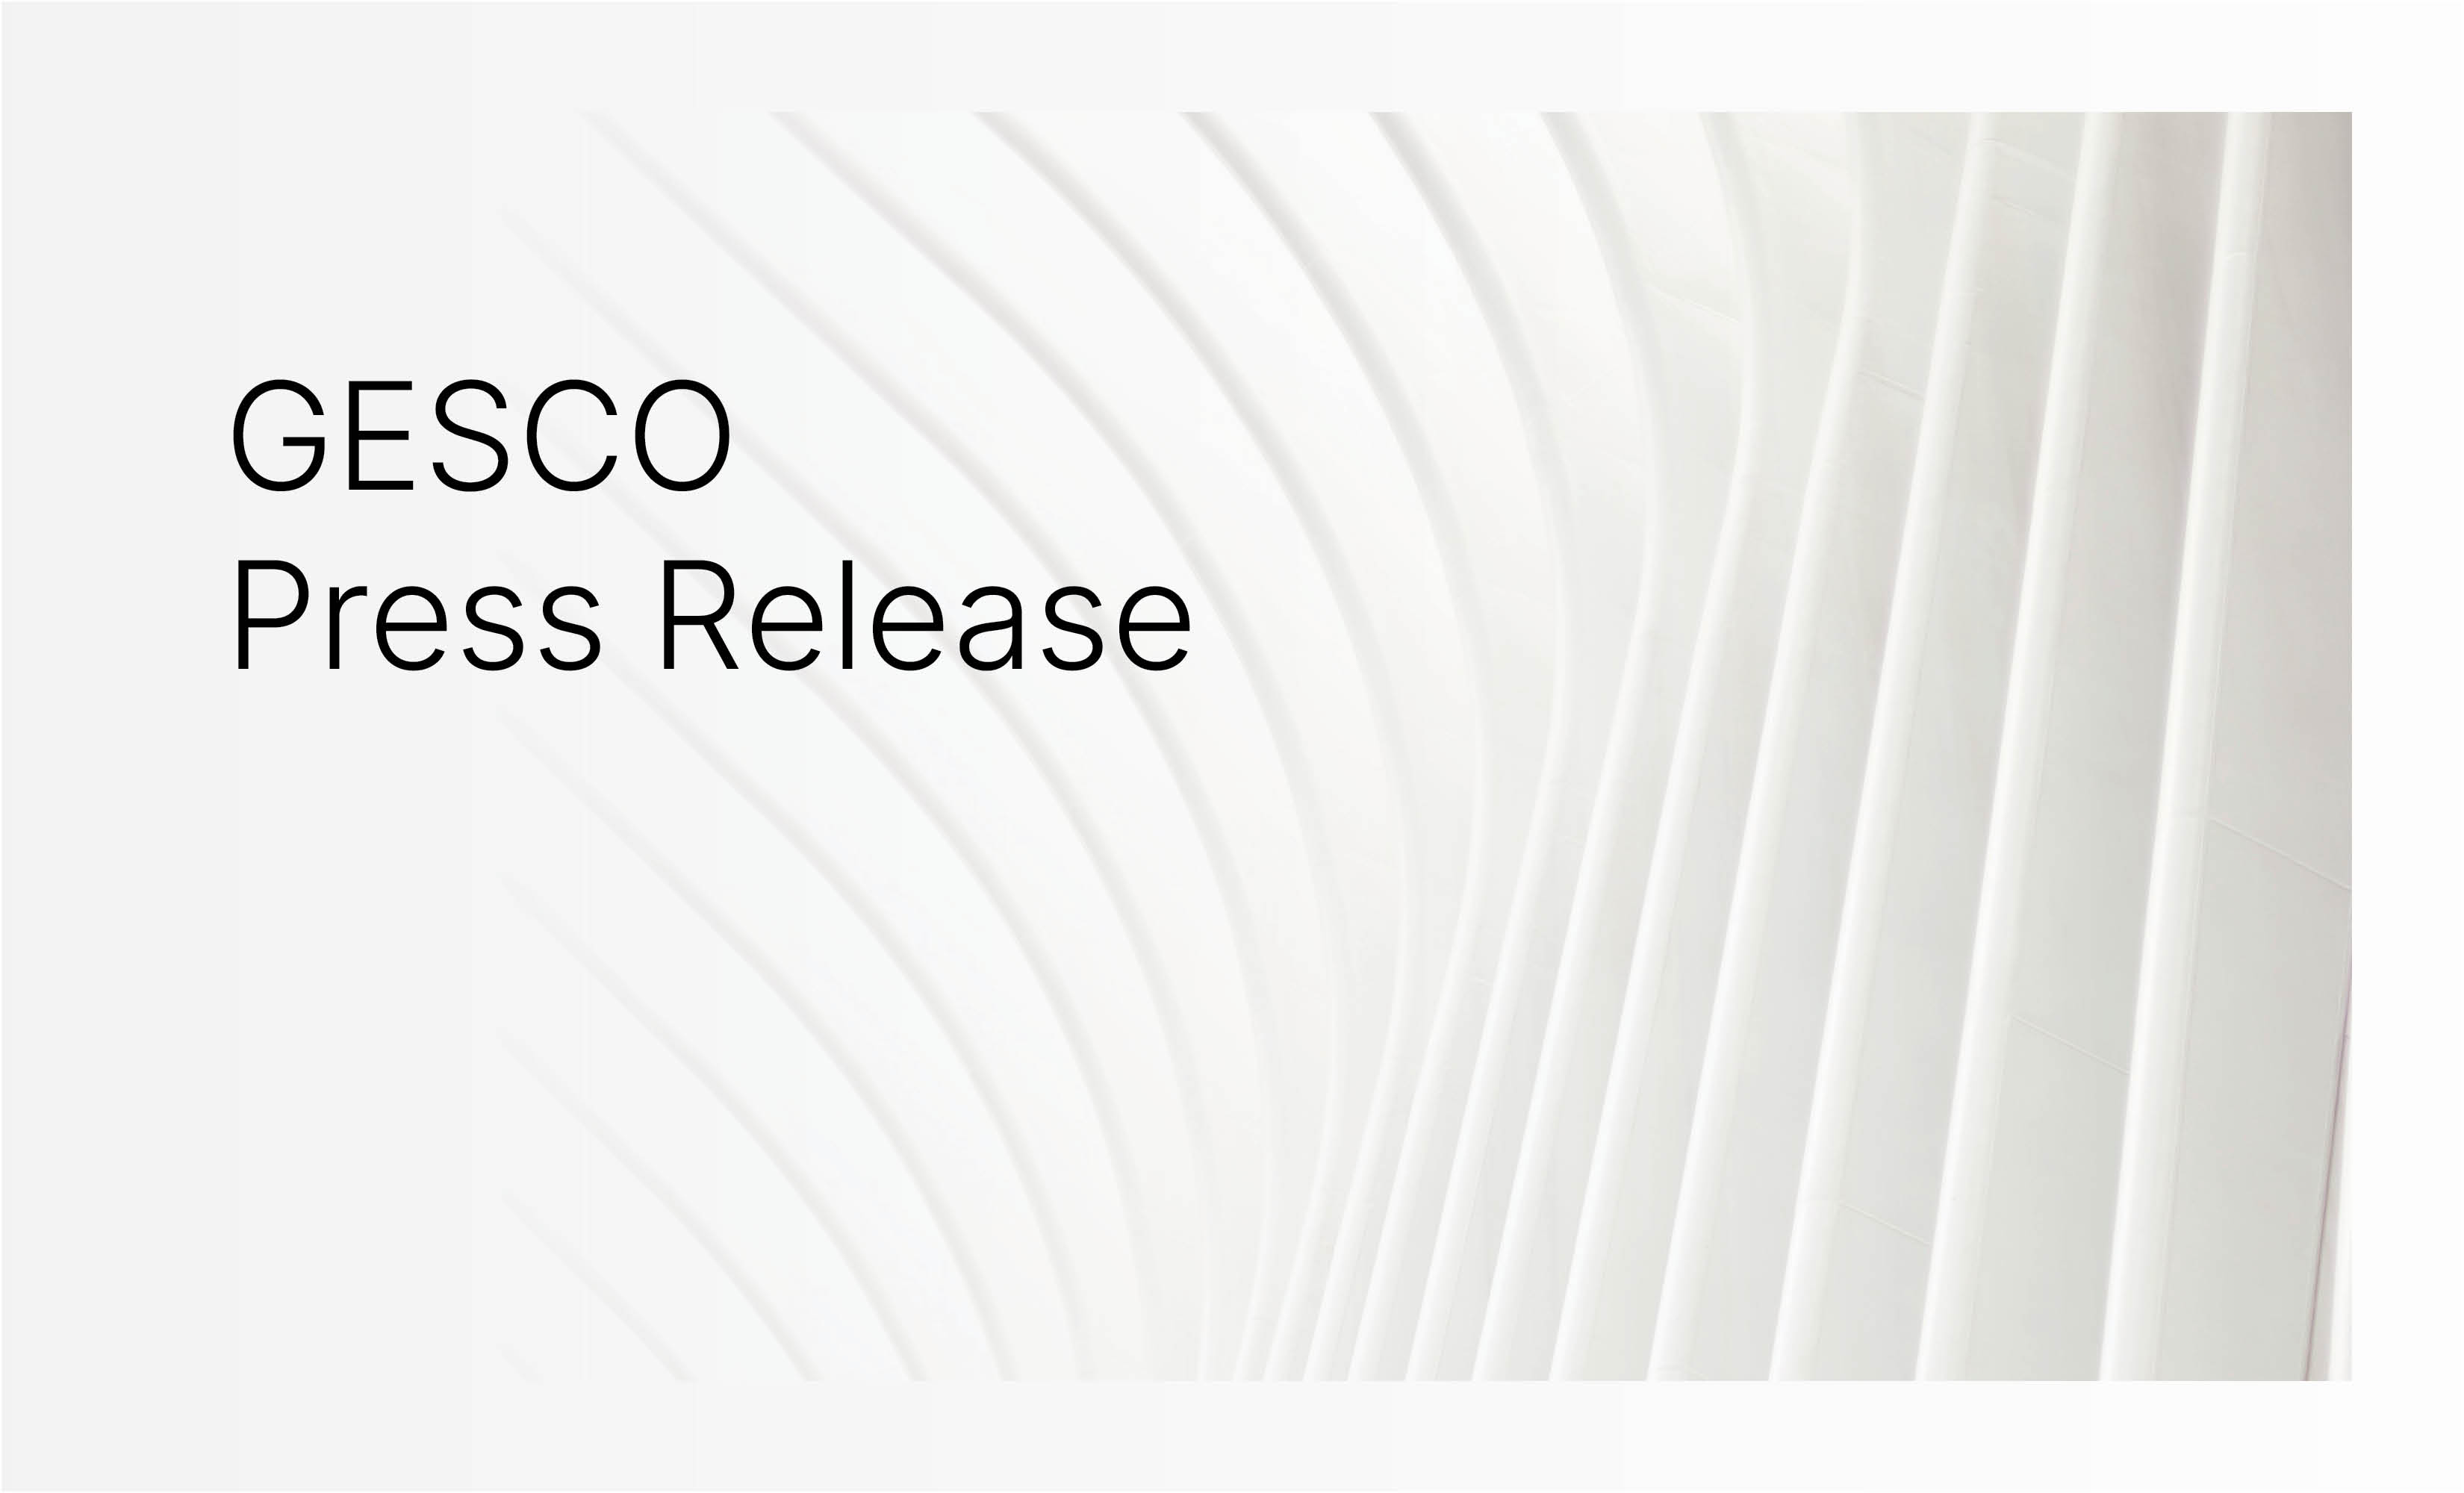 Gesco Press Release - Resource